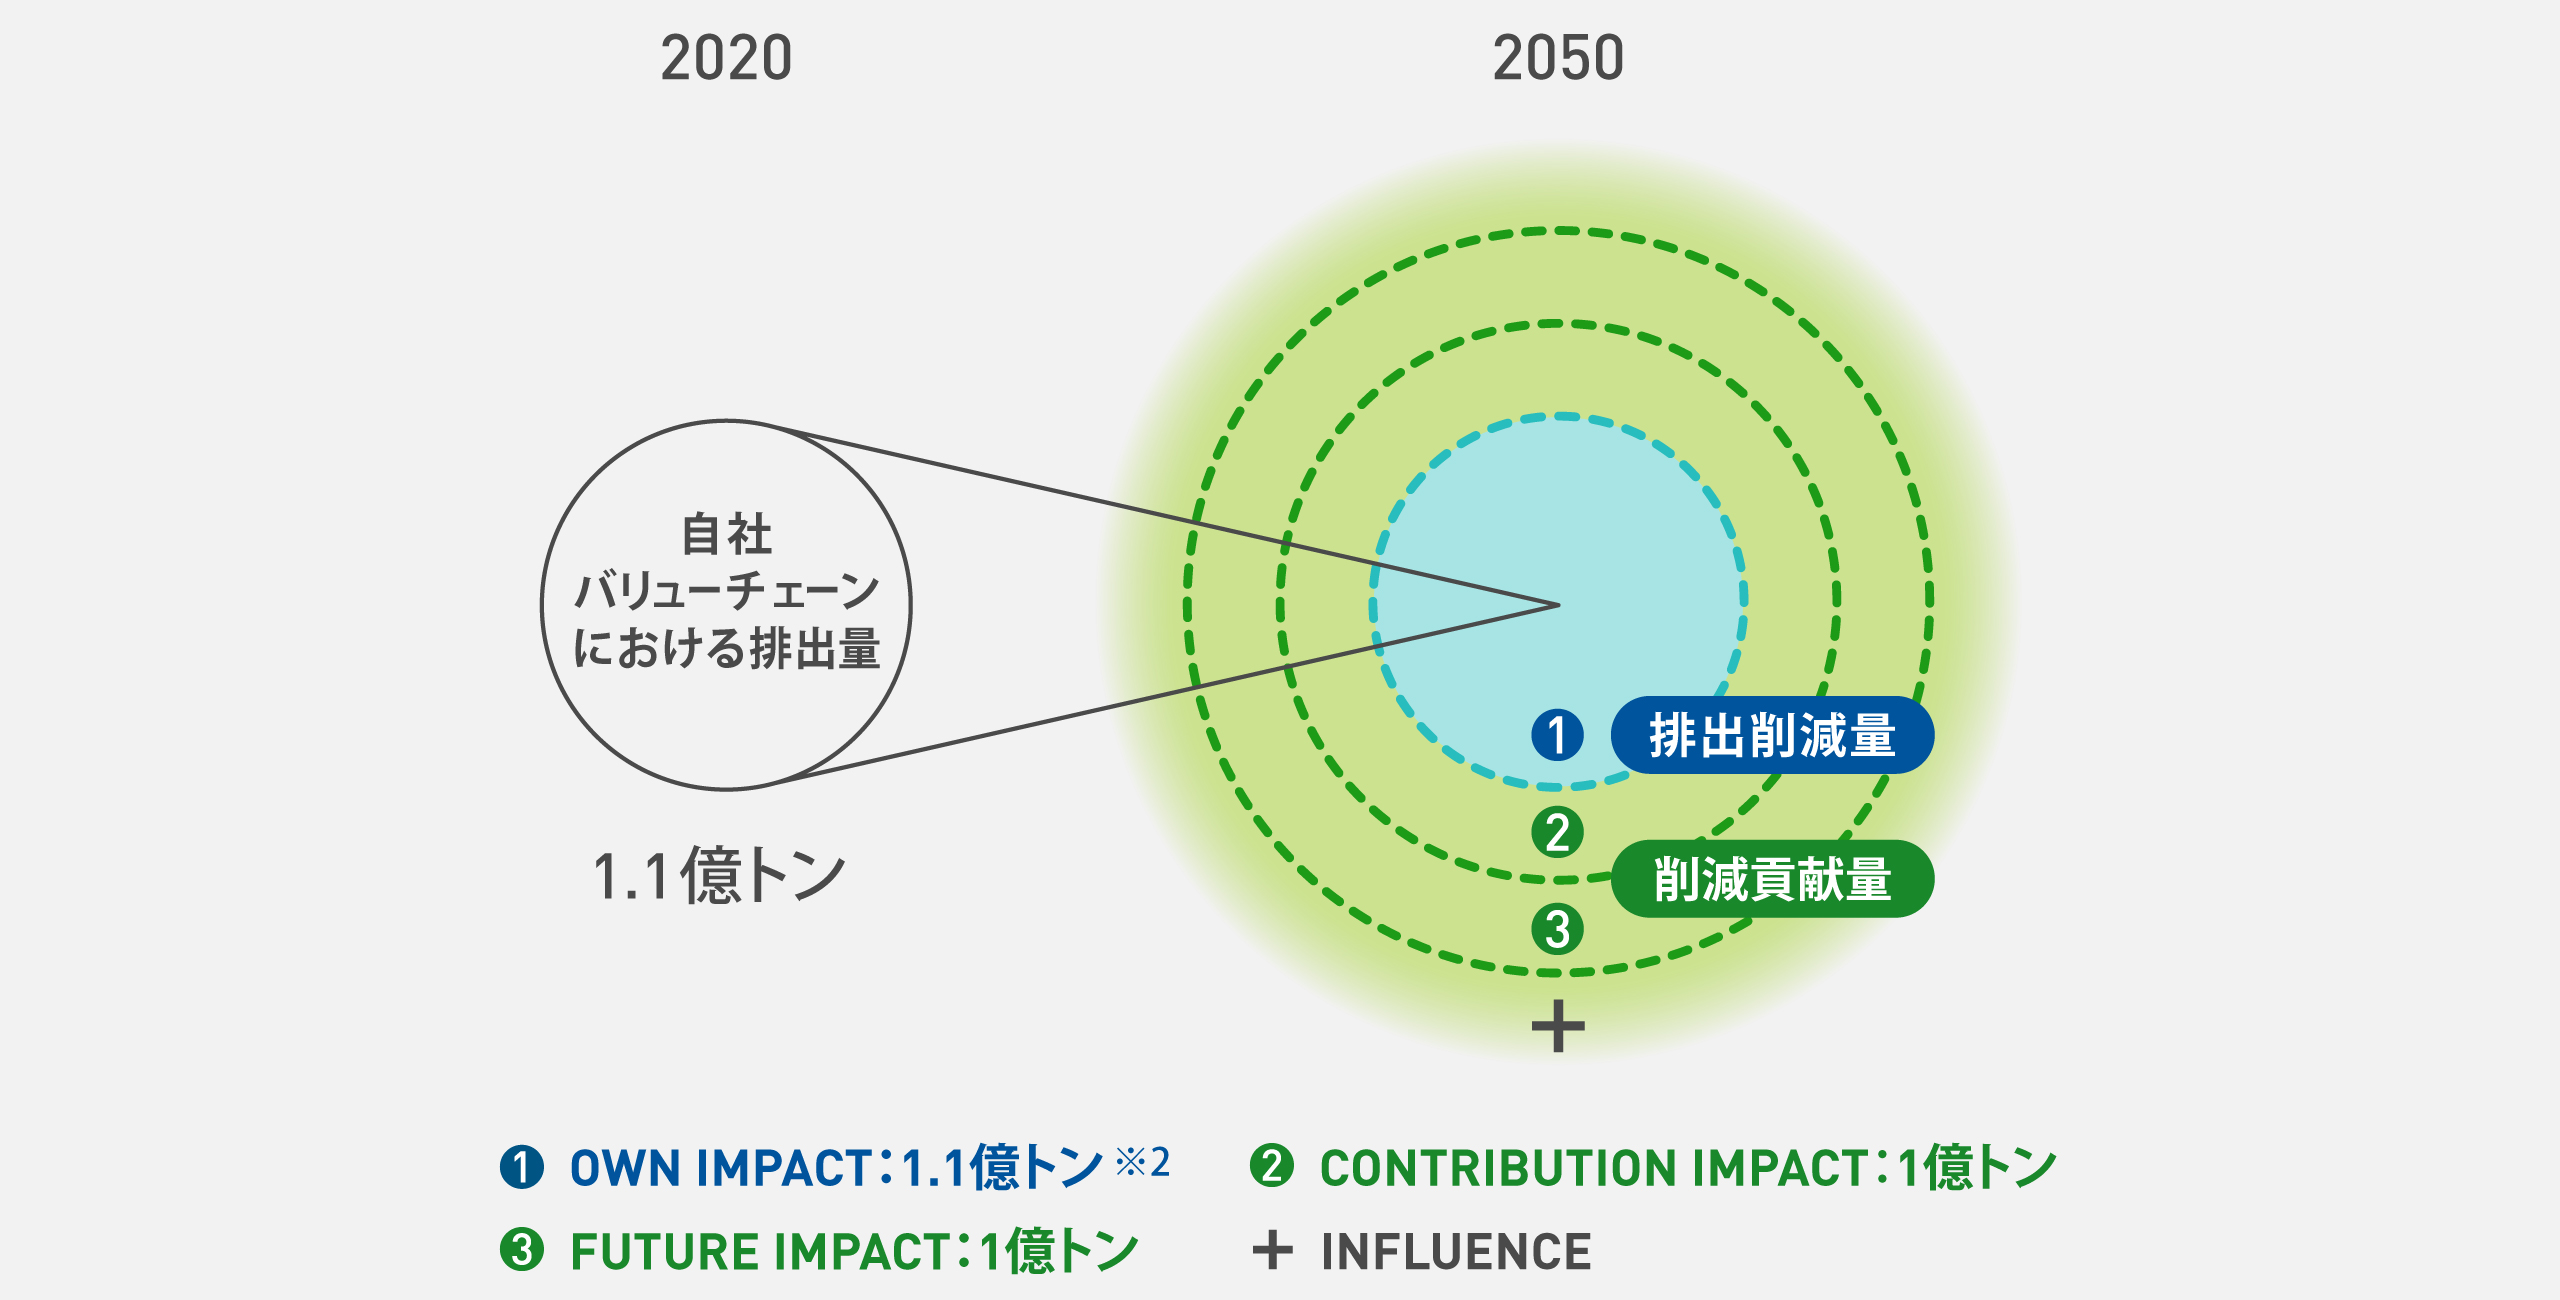 2020年度から2050年度へ向けたカーボンニュートラルの拡がりを示した概念図。左右に1つの小さな円と3重になった大きな同心円があり、左の円は2020年度の自社バリューチェーンにおけるCO2排出量1.1億トンを示し、右の同心円は2050年度のPanasonic GREEN IMPACTによる3億トン以上のCO2削減インパクトを示している。右の同心円は、中央の円がOWN IMPACT、2重の円がCONTRIBUTION IMPACT、3重の円がFUTURE IMPACTになり、3つの同心円の外に拡がるように＋INFLUENCEがある。OWN IMPACTでは1.1億トンの排出量削減を目指し、CONTRIBUTION IMPACTとFUTURE IMPACTではそれぞれ1億トンの削減貢献量を目指す。